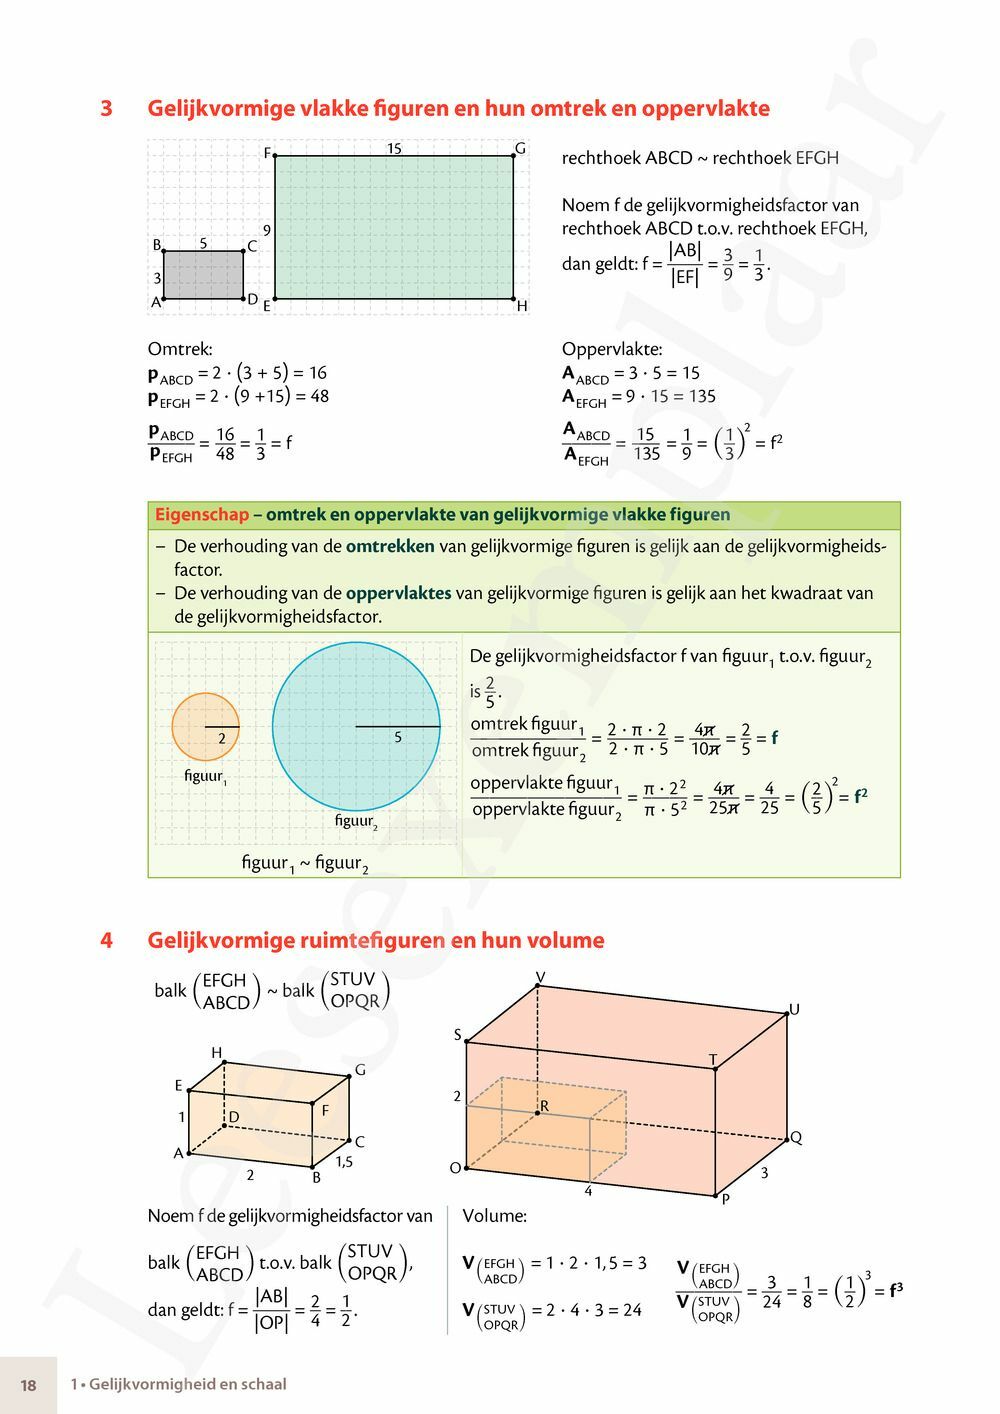 Preview: Matrix Wiskunde 4.3 Leerwerkboek B Meetkunde – Statistiek (incl. Pelckmans Portaal)